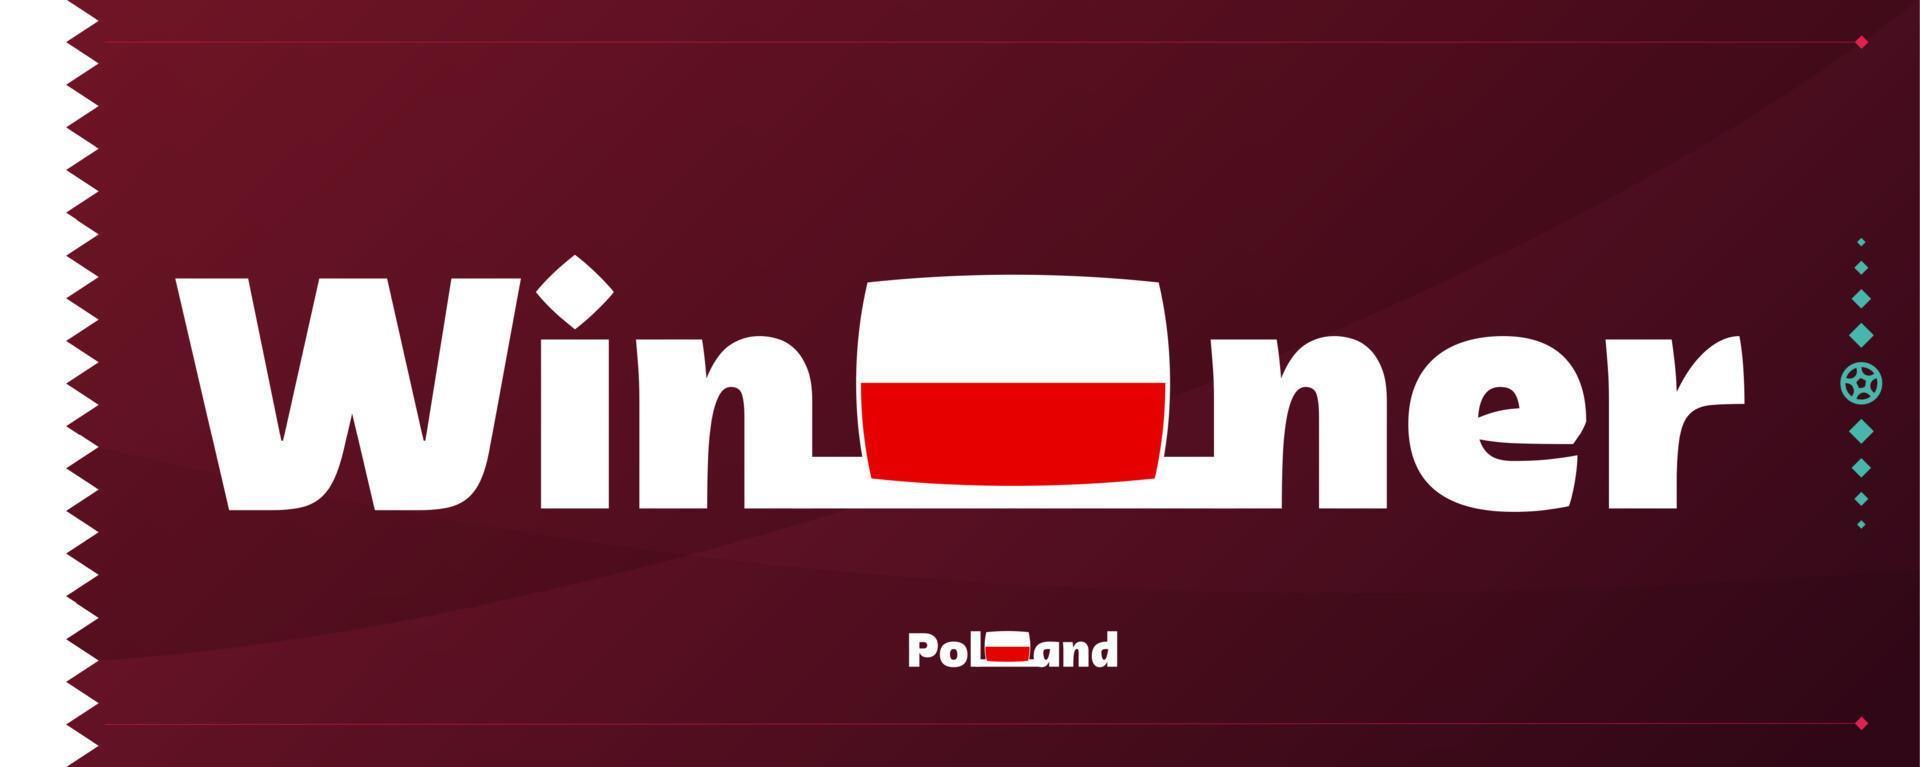 bandera de polonia con eslogan ganador en el fondo del fútbol. Ilustración de vector de torneo de fútbol mundial 2022